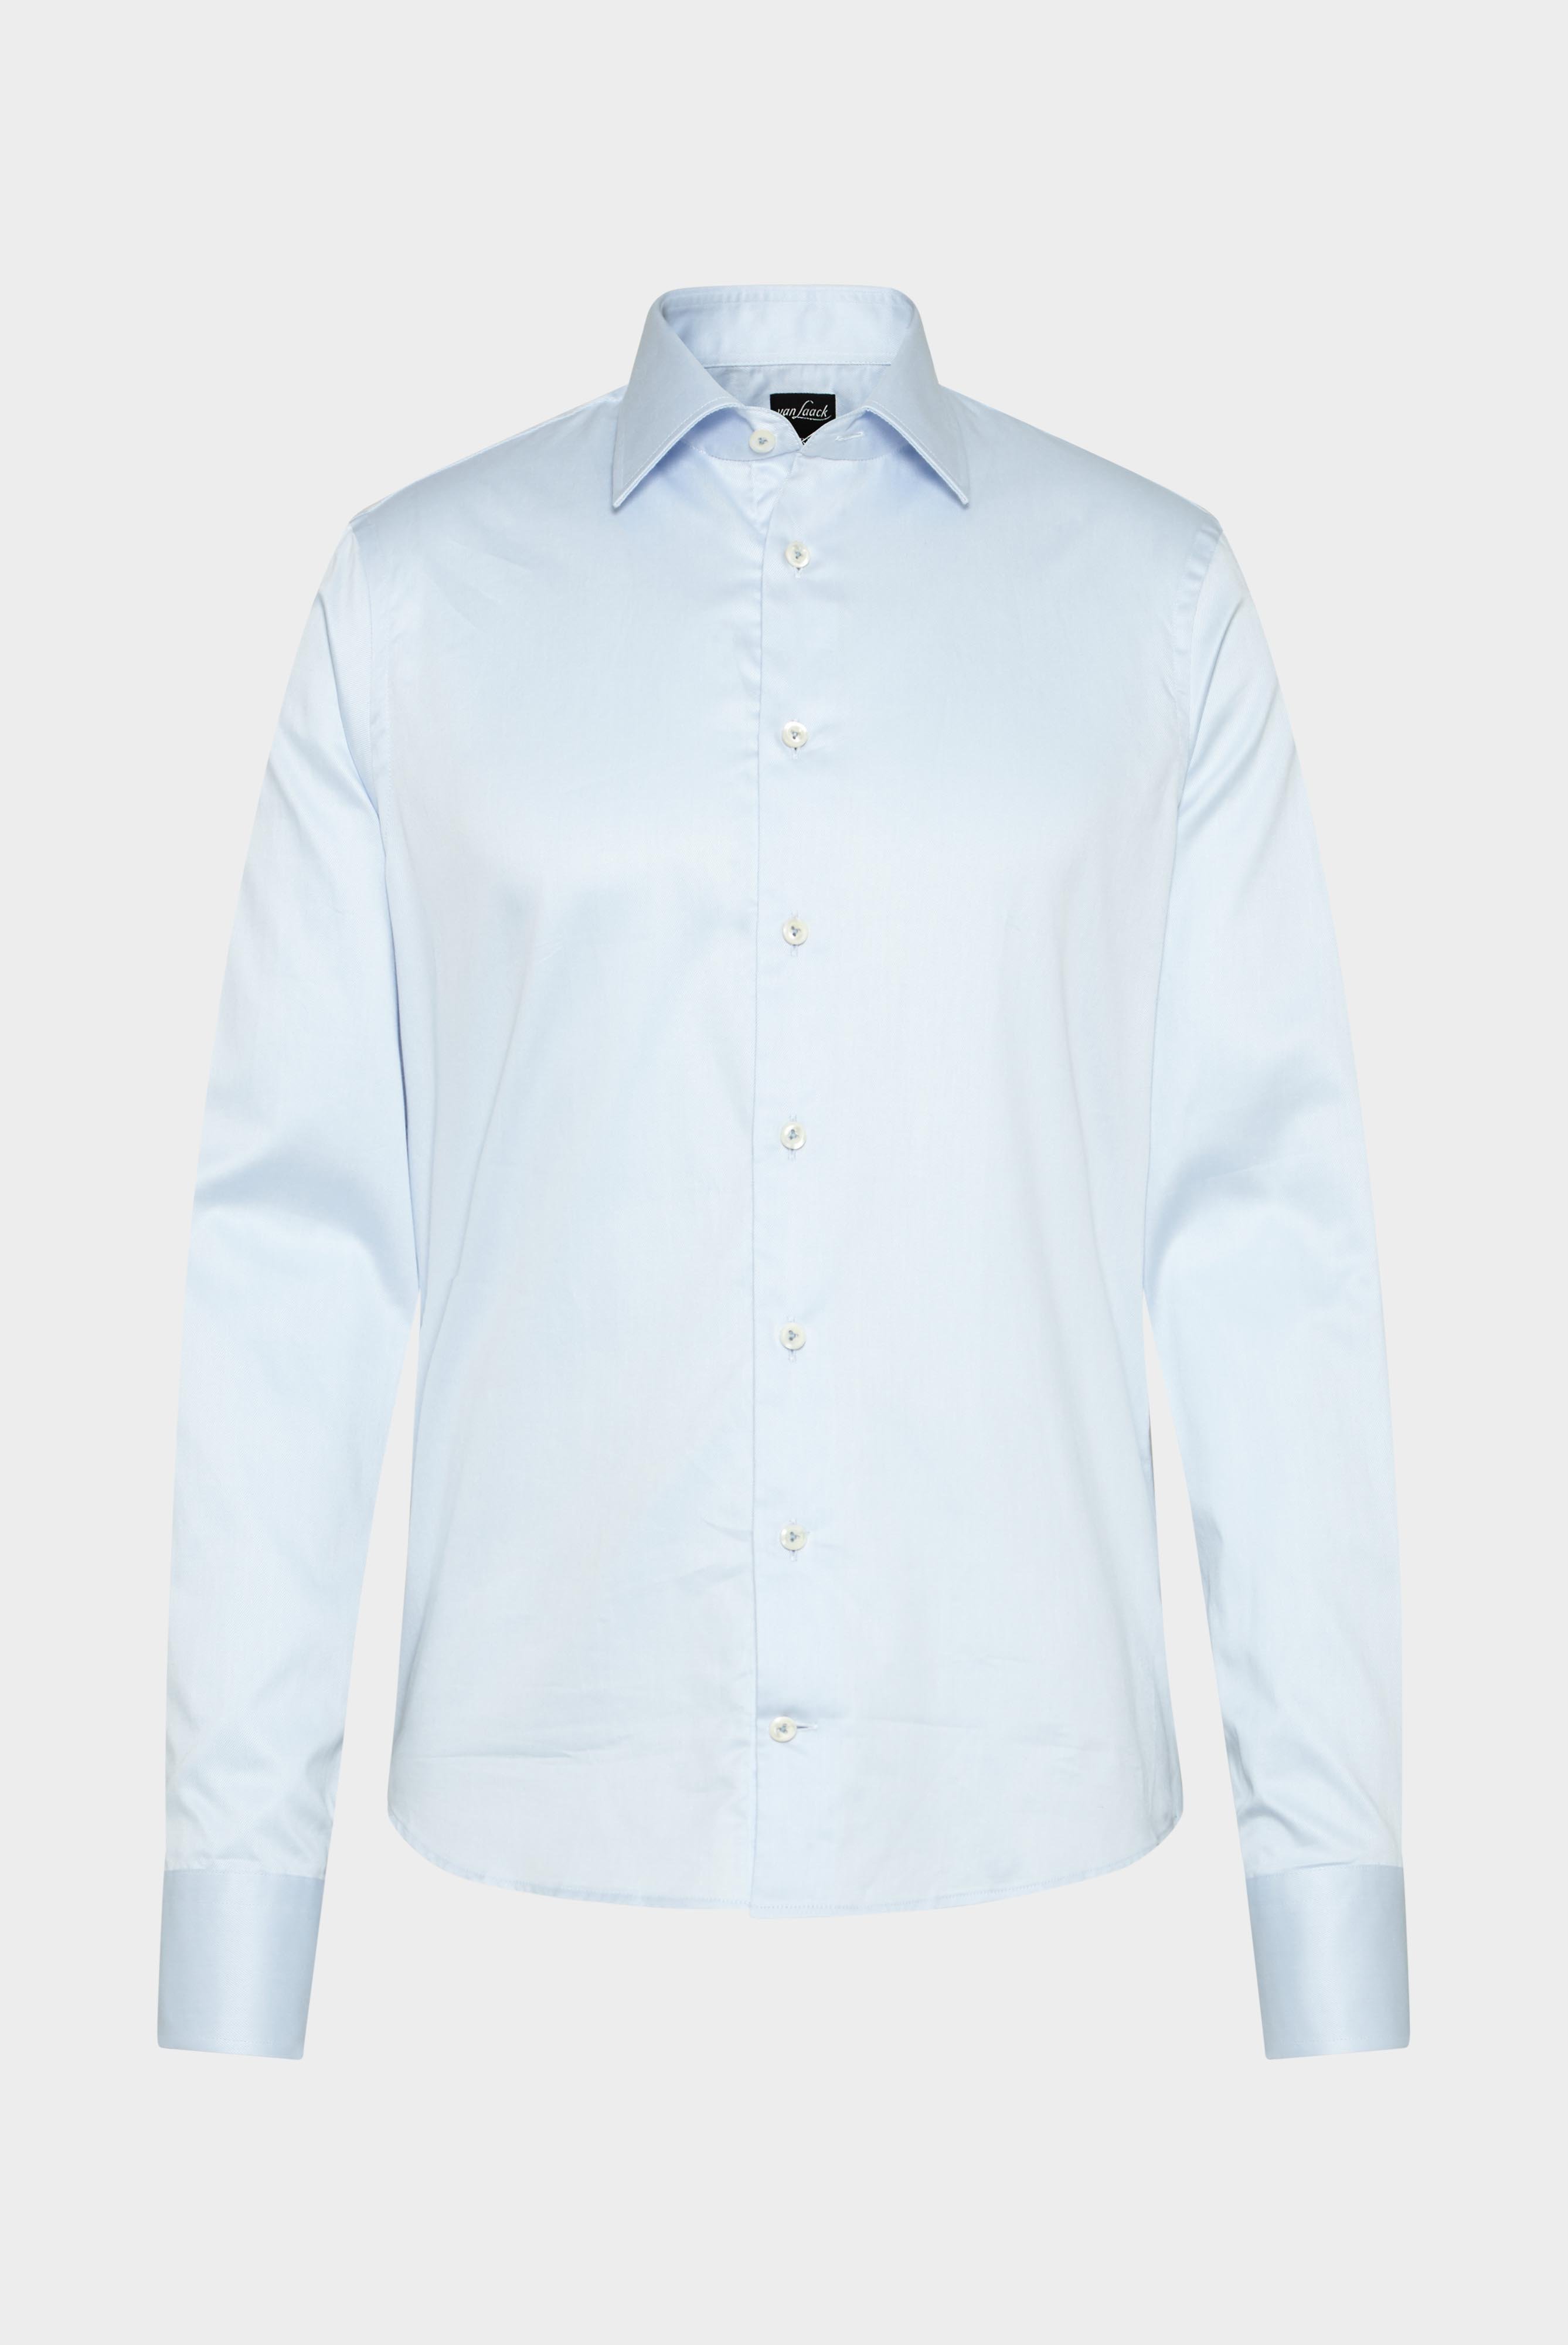 Business Shirts+Fine Cotton Twill Shirt+20.2010.NV.130148.710.37